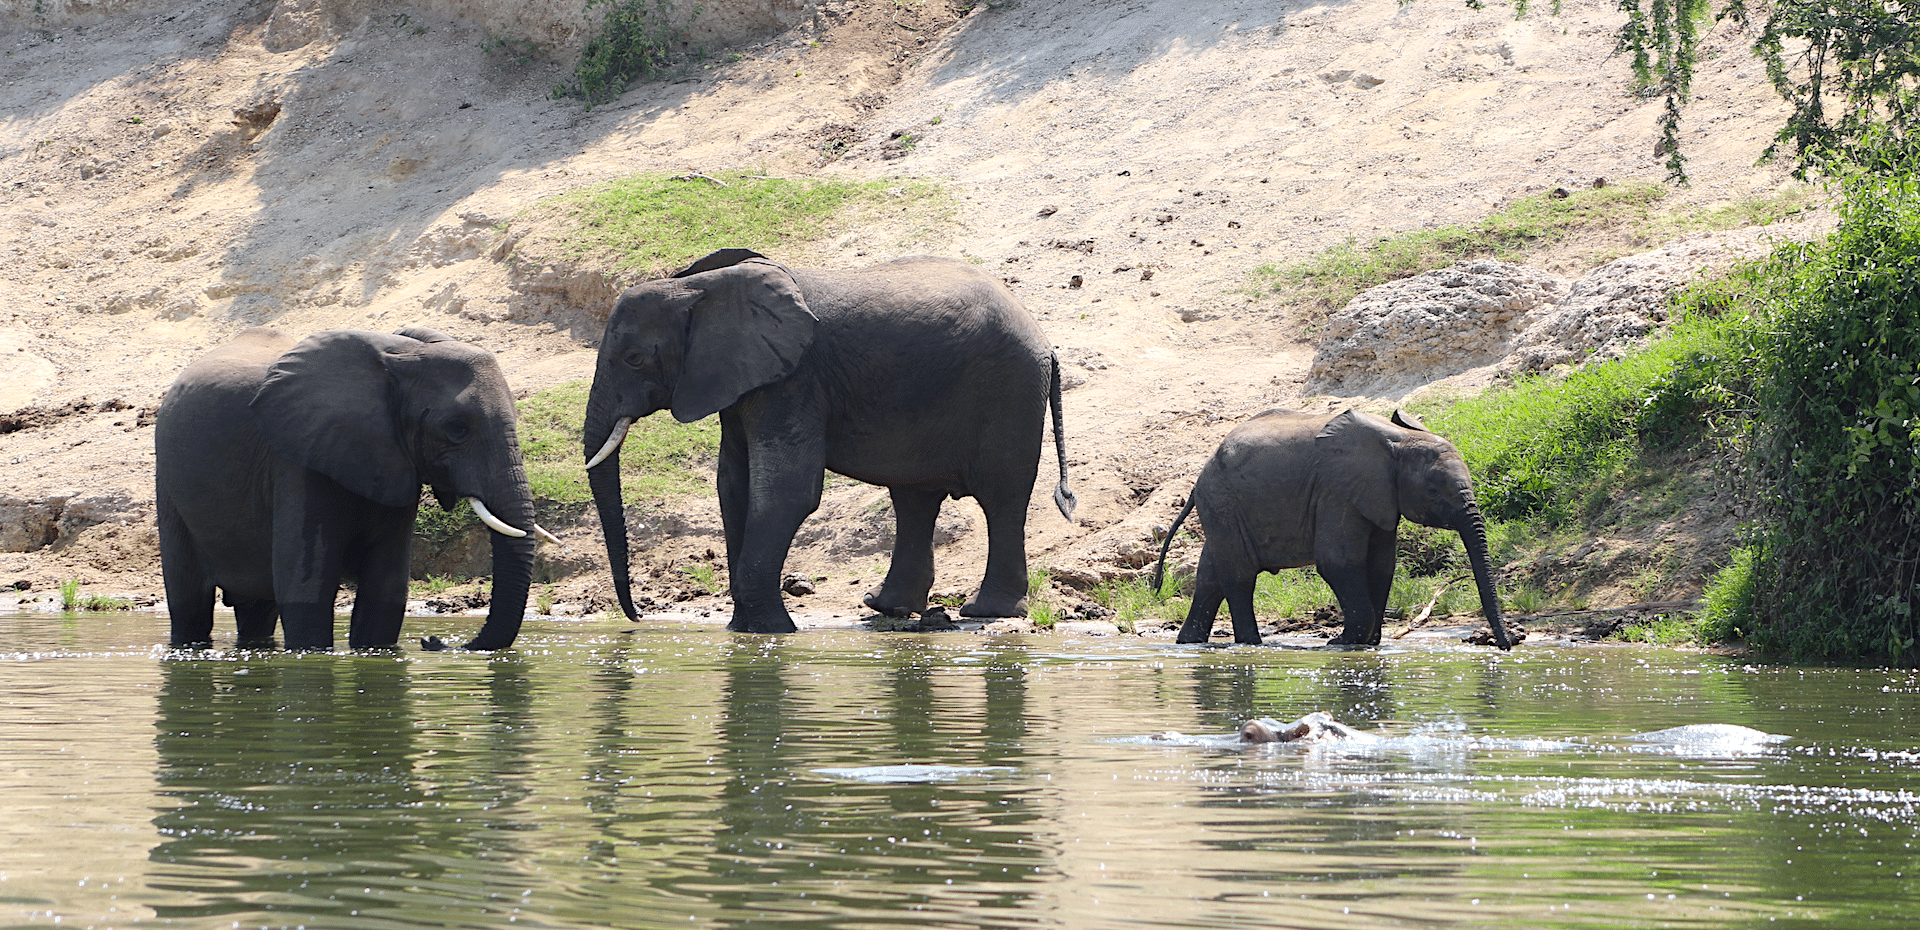 elephants in Queen Elizabeth National Park, Uganda